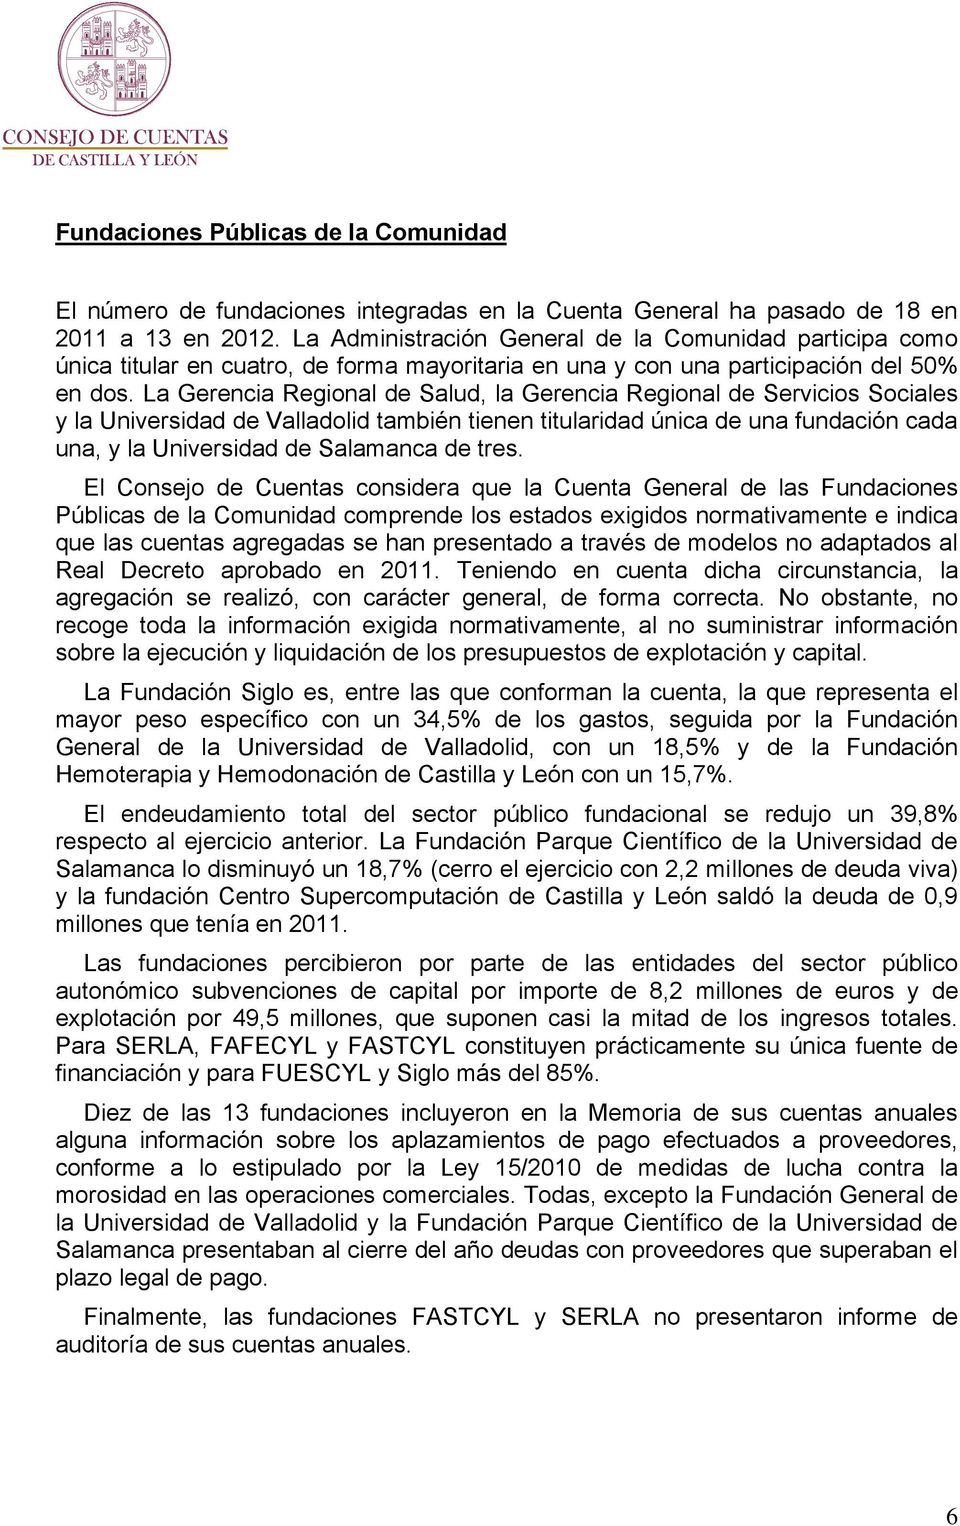 La Gerencia Regional de Salud, la Gerencia Regional de Servicios Sociales y la Universidad de Valladolid también tienen titularidad única de una fundación cada una, y la Universidad de Salamanca de